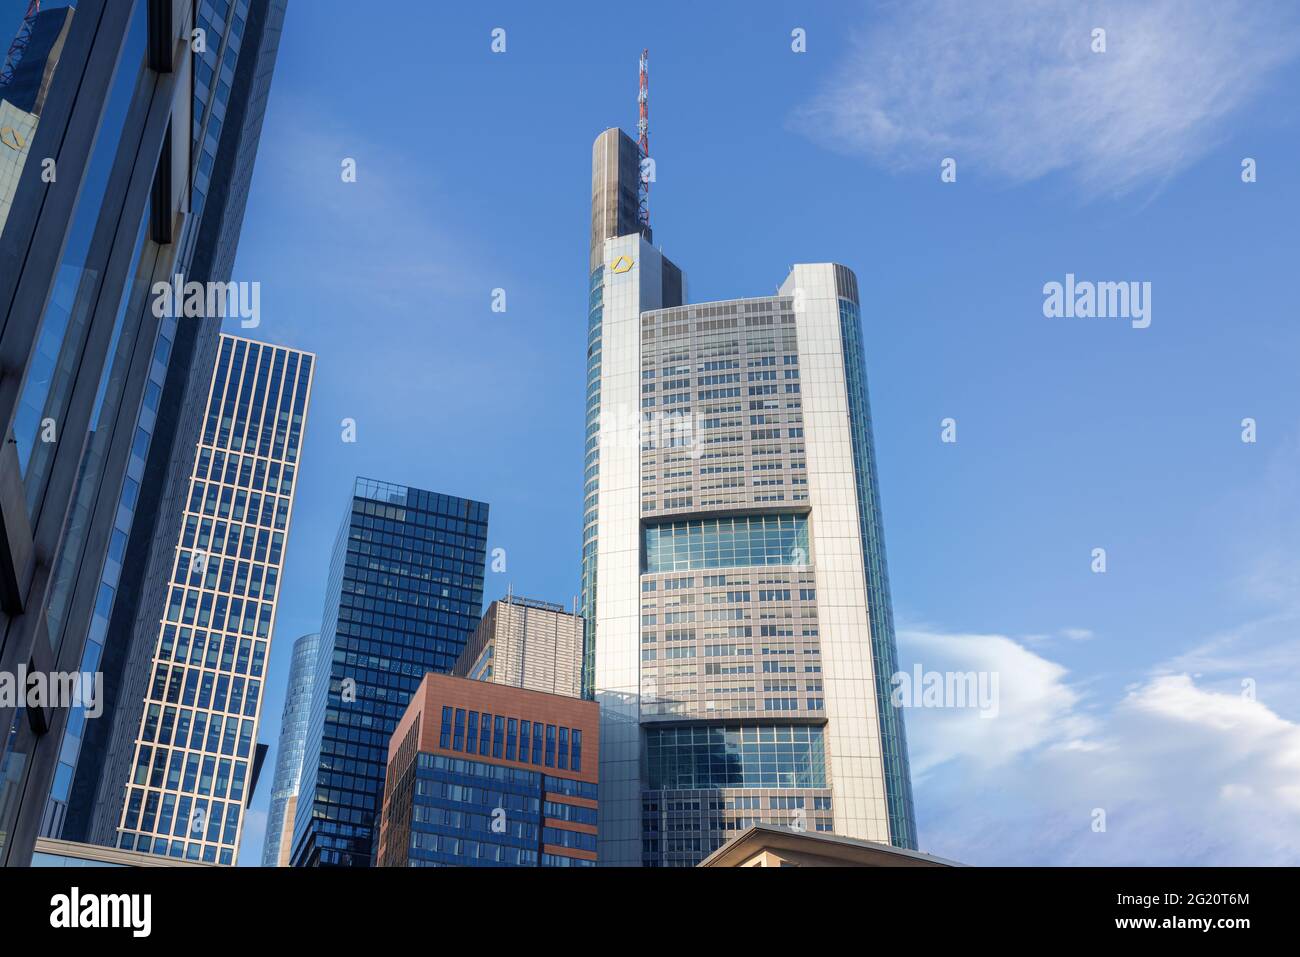 La Tour Commerzbank dans le quartier bancaire de Francfort - Francfort, Allemagne Banque D'Images